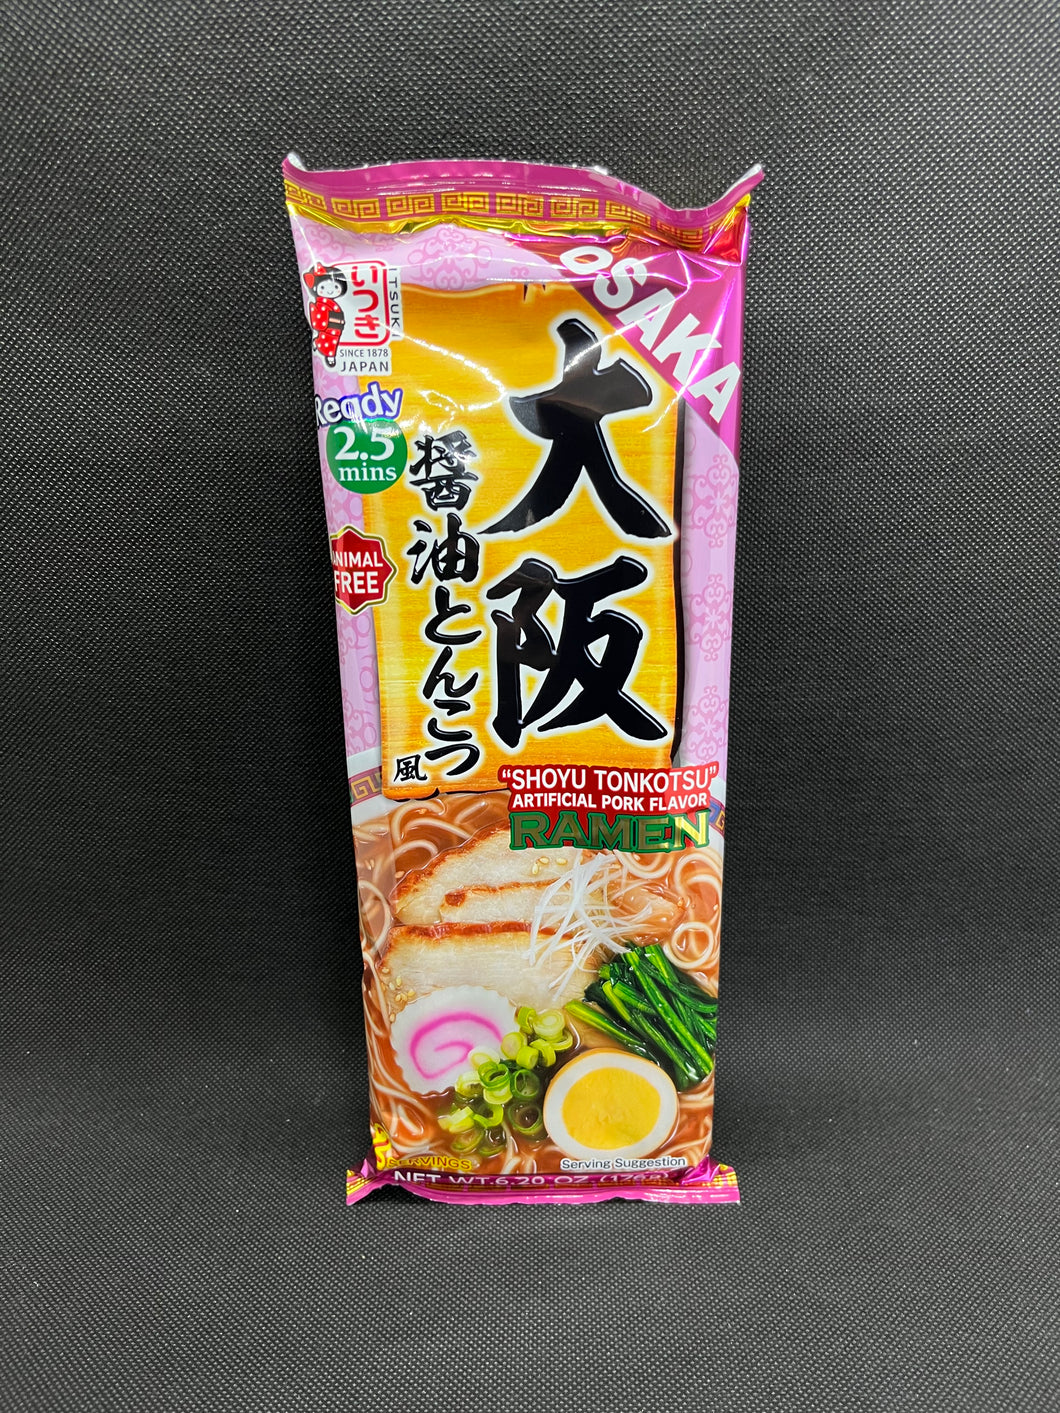 Itsuki Osaka Shoyu Tonkotsu Ramen (2 portions)